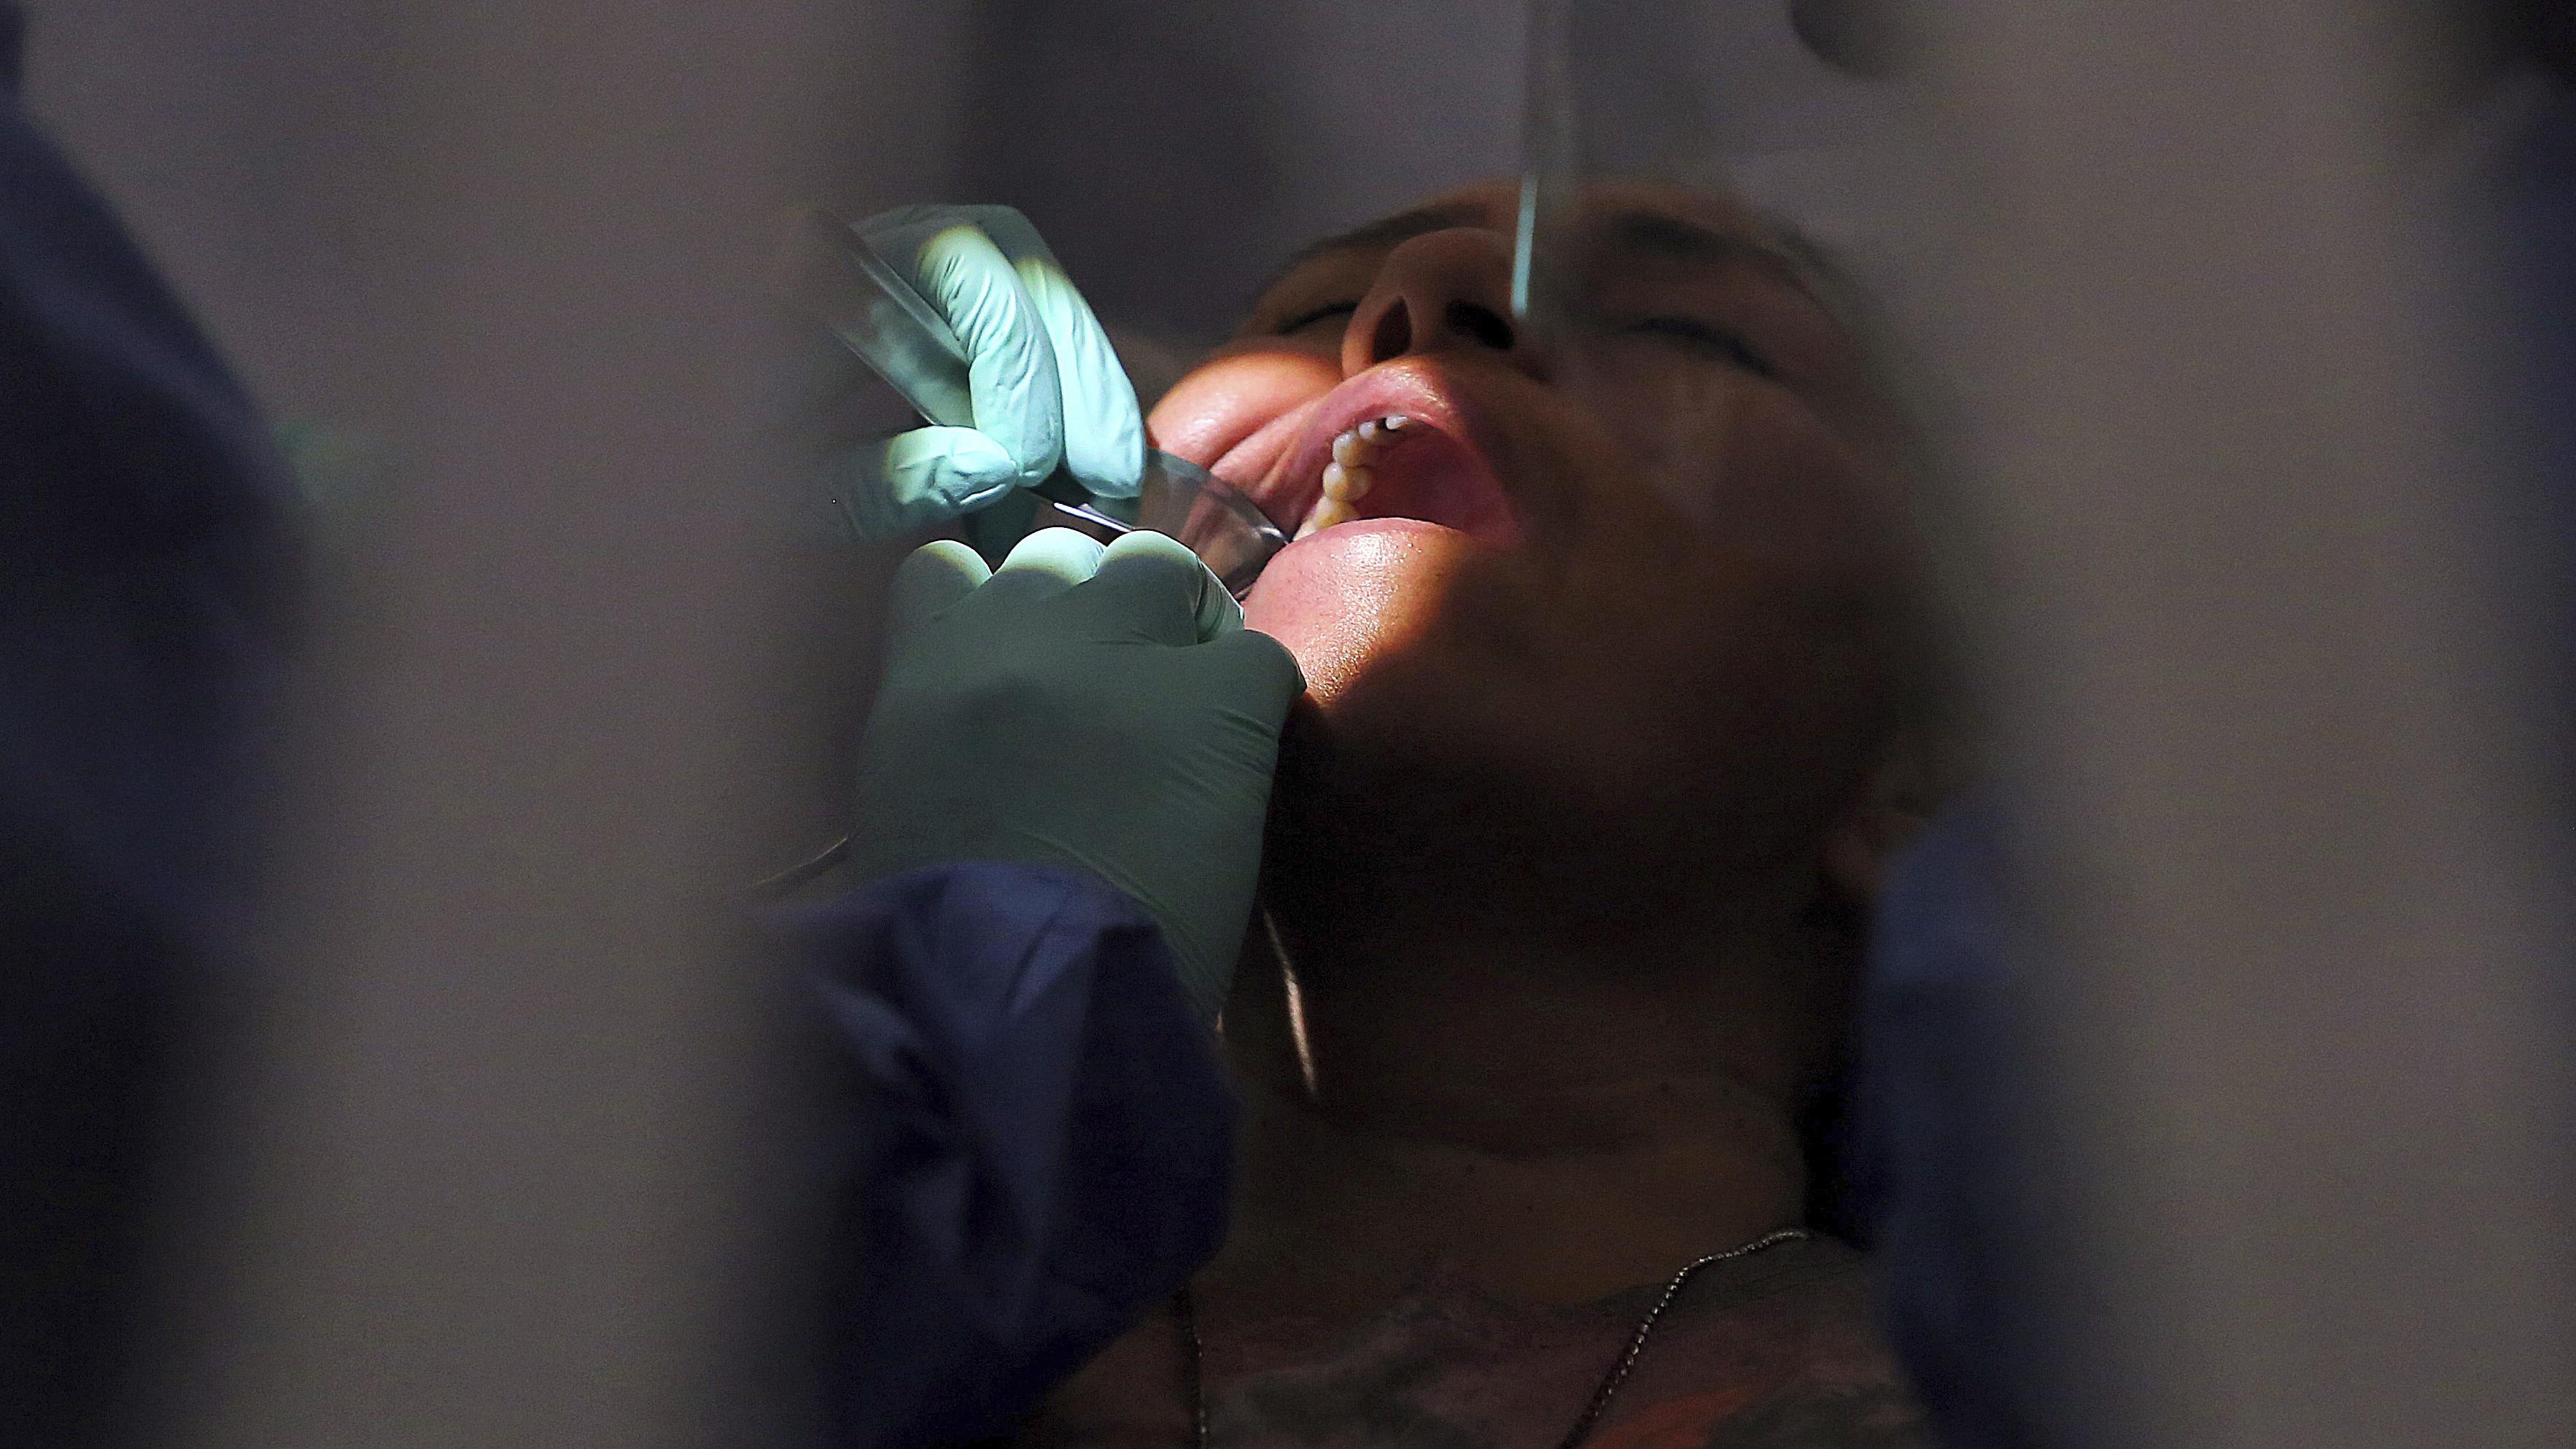 Recours collectif sur des soins dentaires dangereux prodigués aux Autochtones
Recours collectif sur des soins dentaires dangereux prodigués aux Autochtones